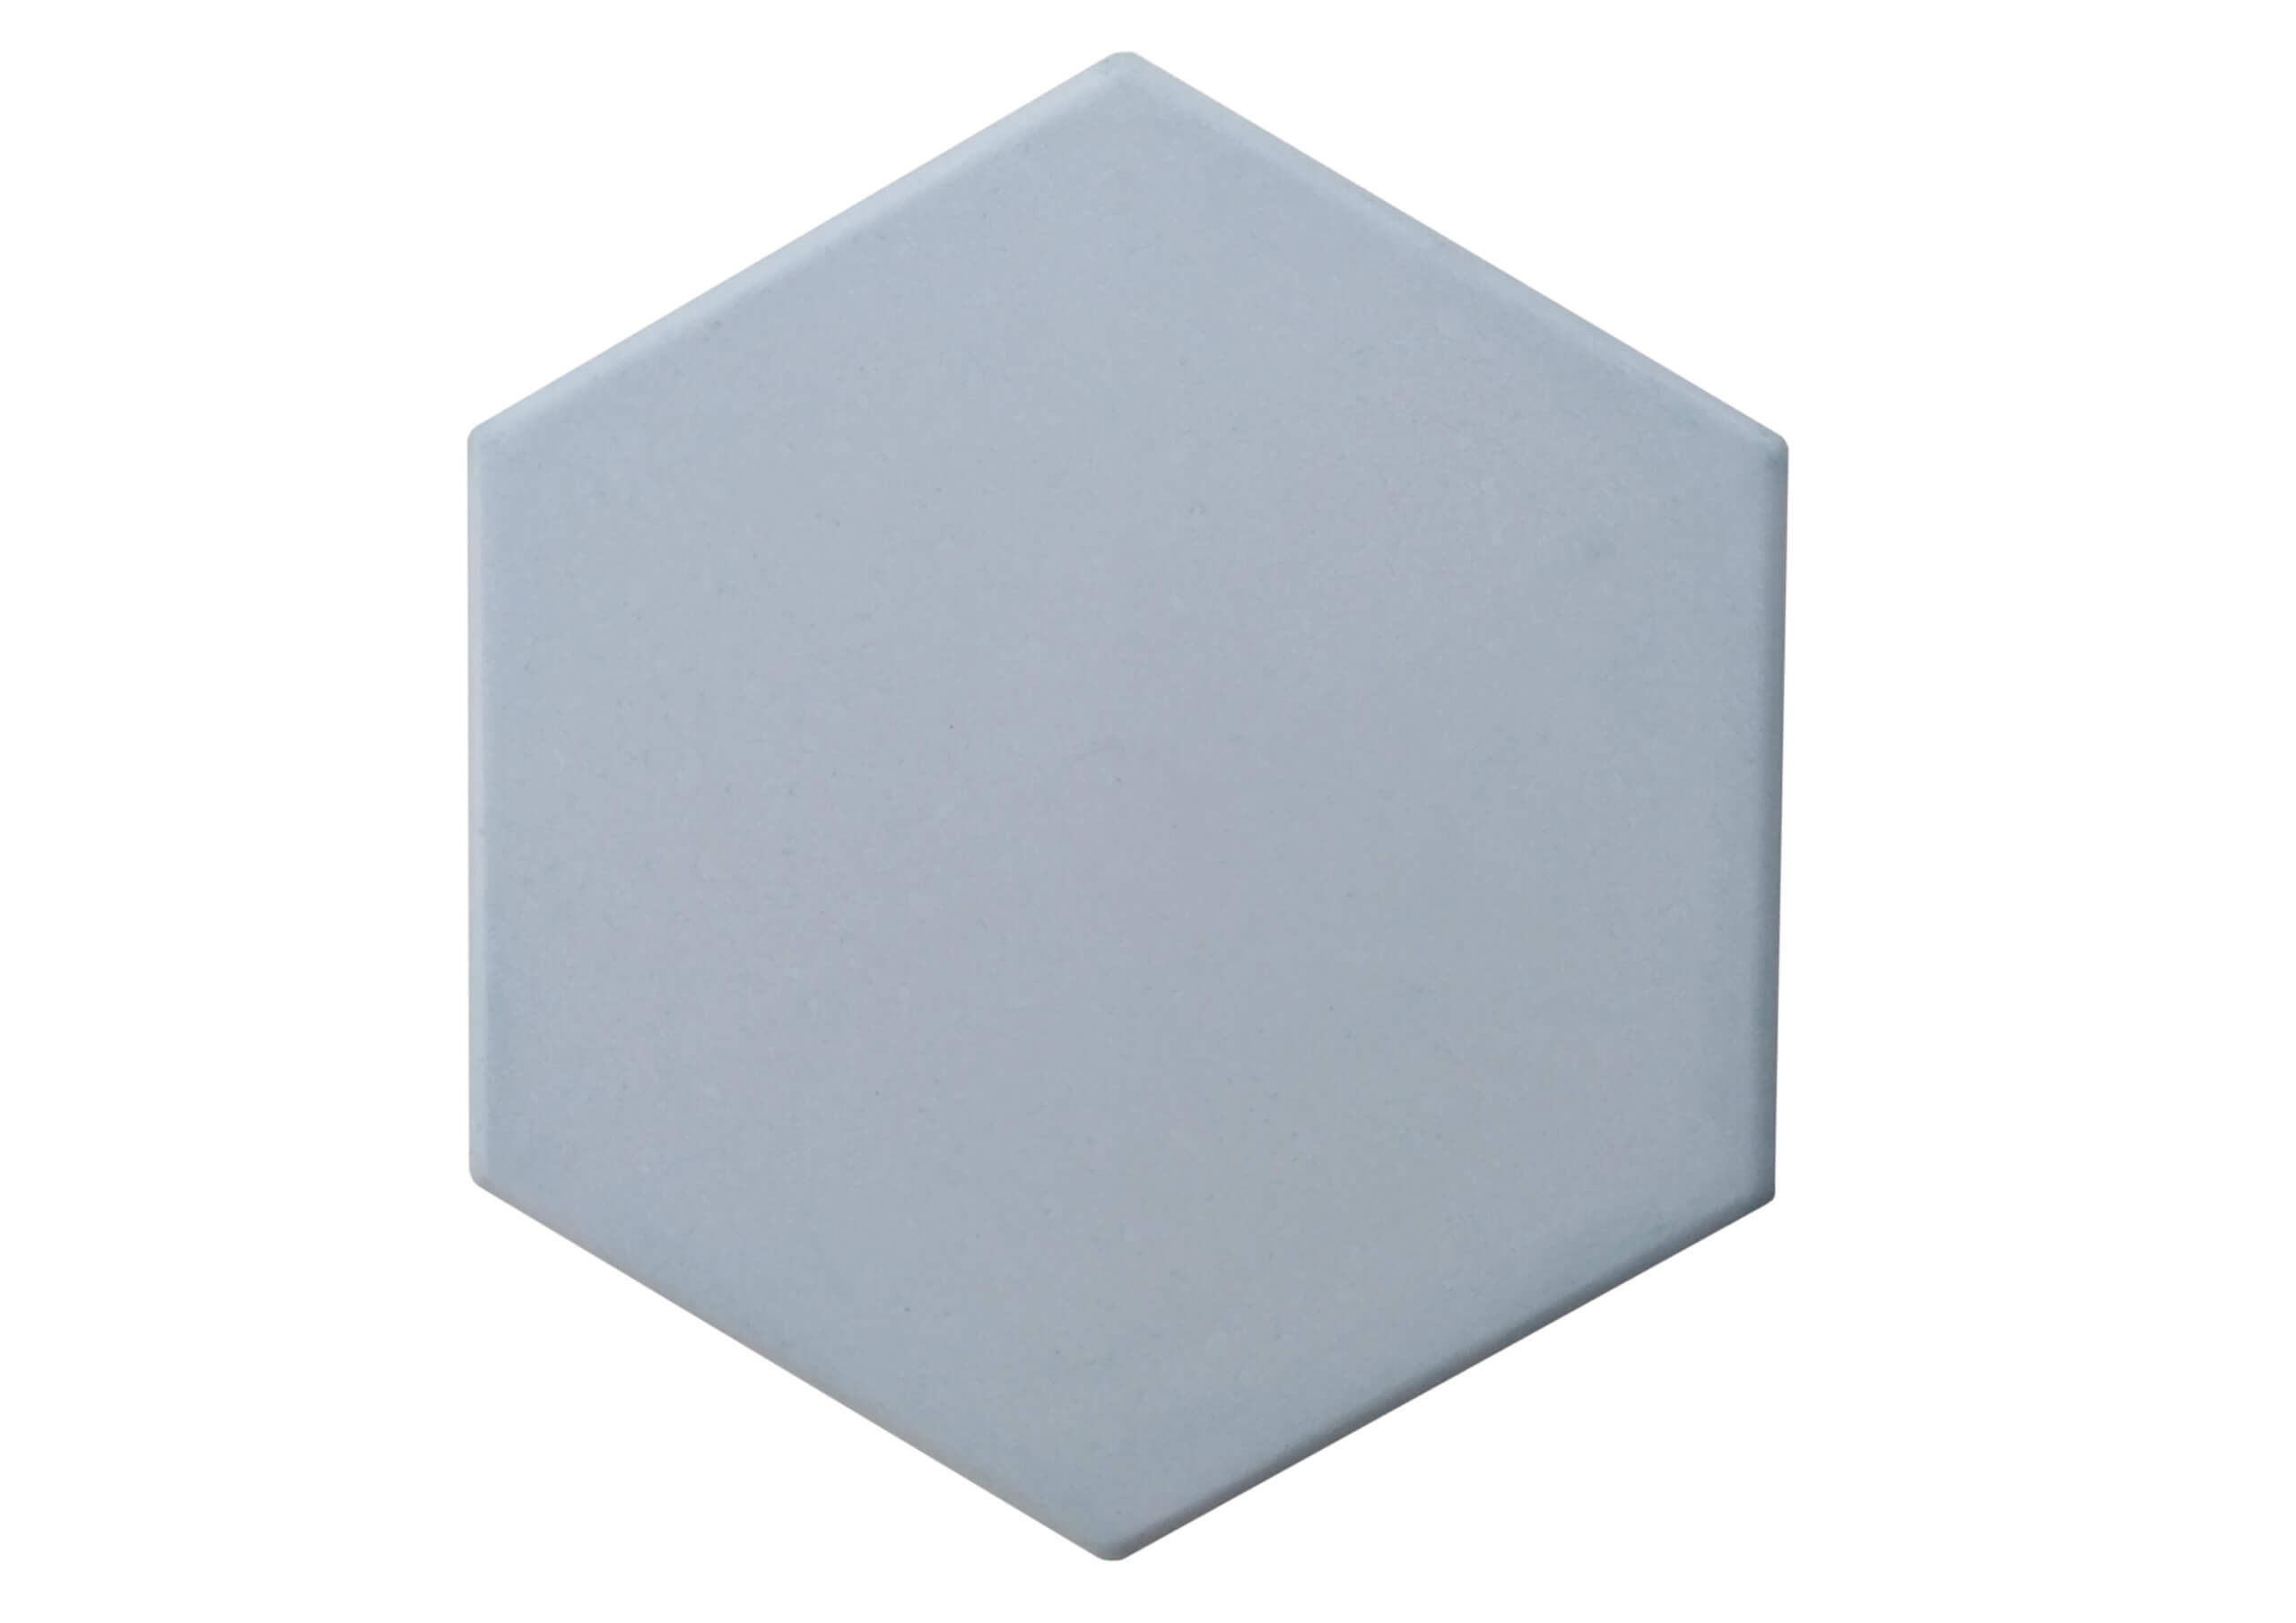 Hexagonal 17×17